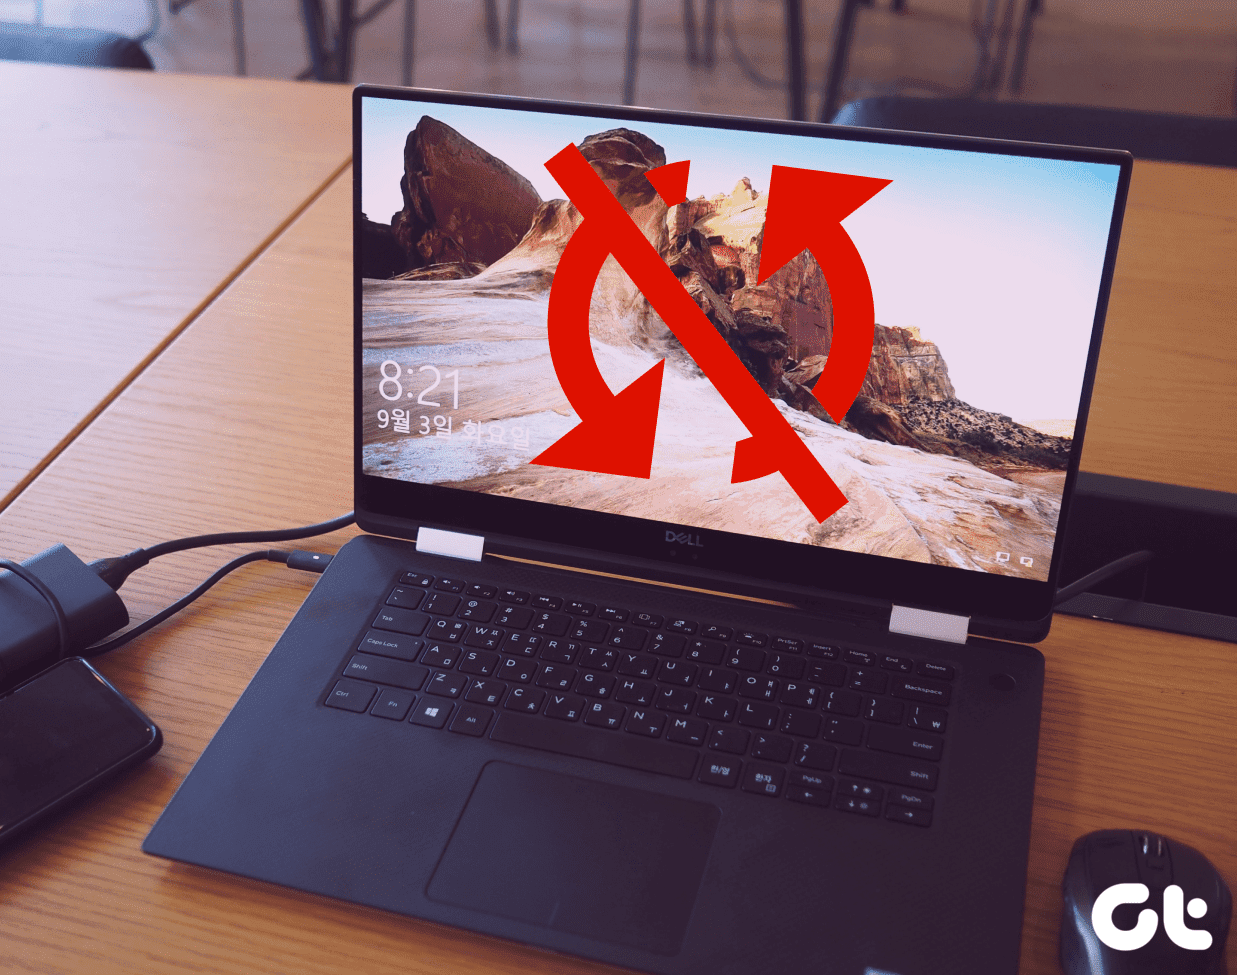 8 Korrekturen für „Auf Ihrem Gerät fehlen wichtige Sicherheits- und Qualitätskorrekturen“ unter Windows